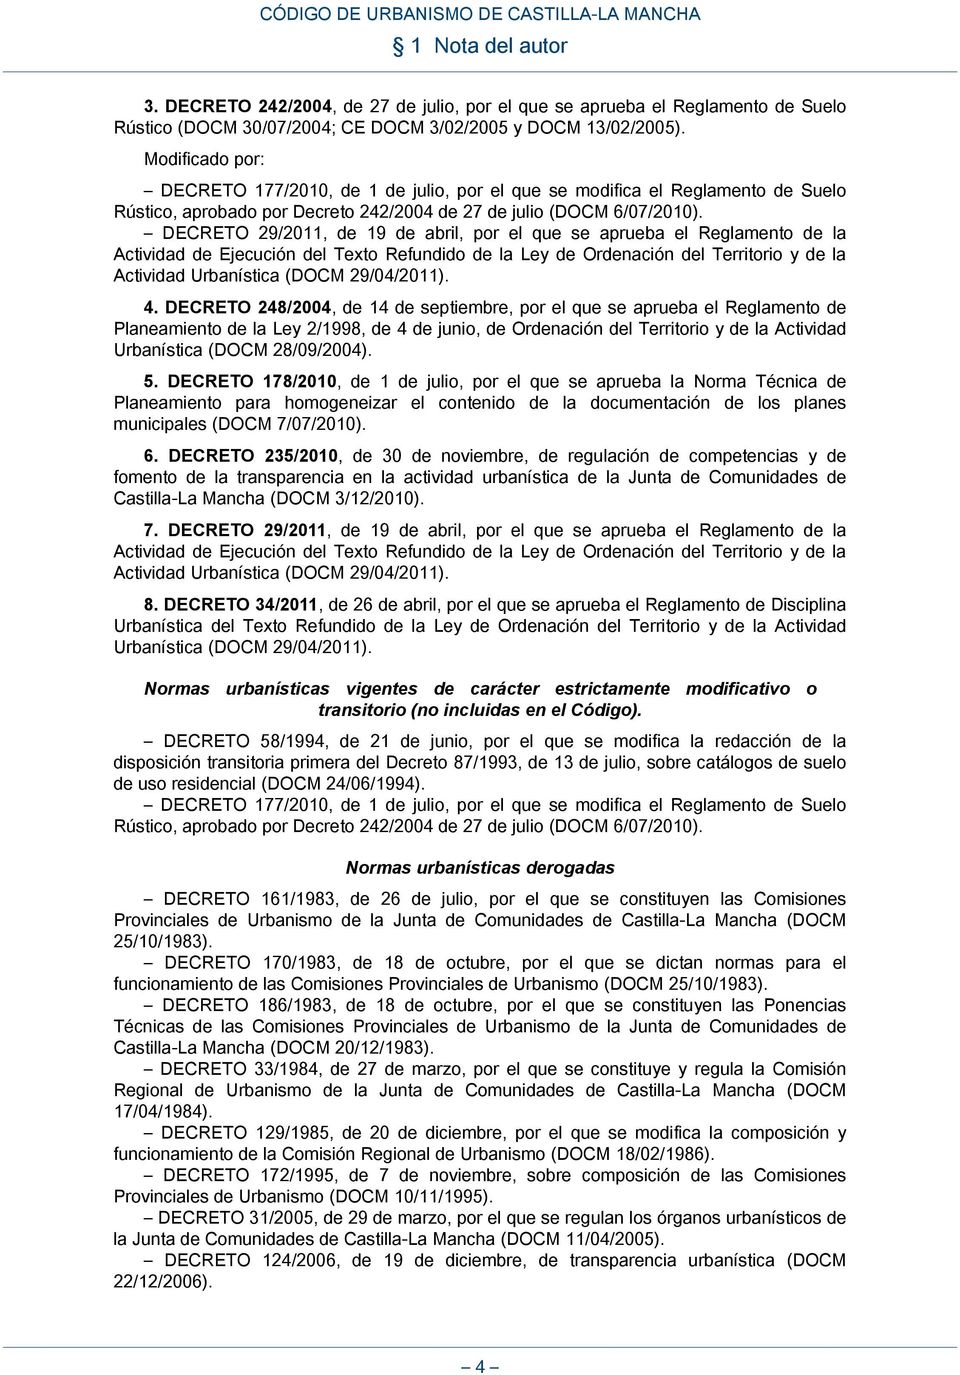 DECRETO 29/2011, de 19 de abril, por el que se aprueba el Reglamento de la Actividad de Ejecución del Texto Refundido de la Ley de Ordenación del Territorio y de la Actividad Urbanística (DOCM